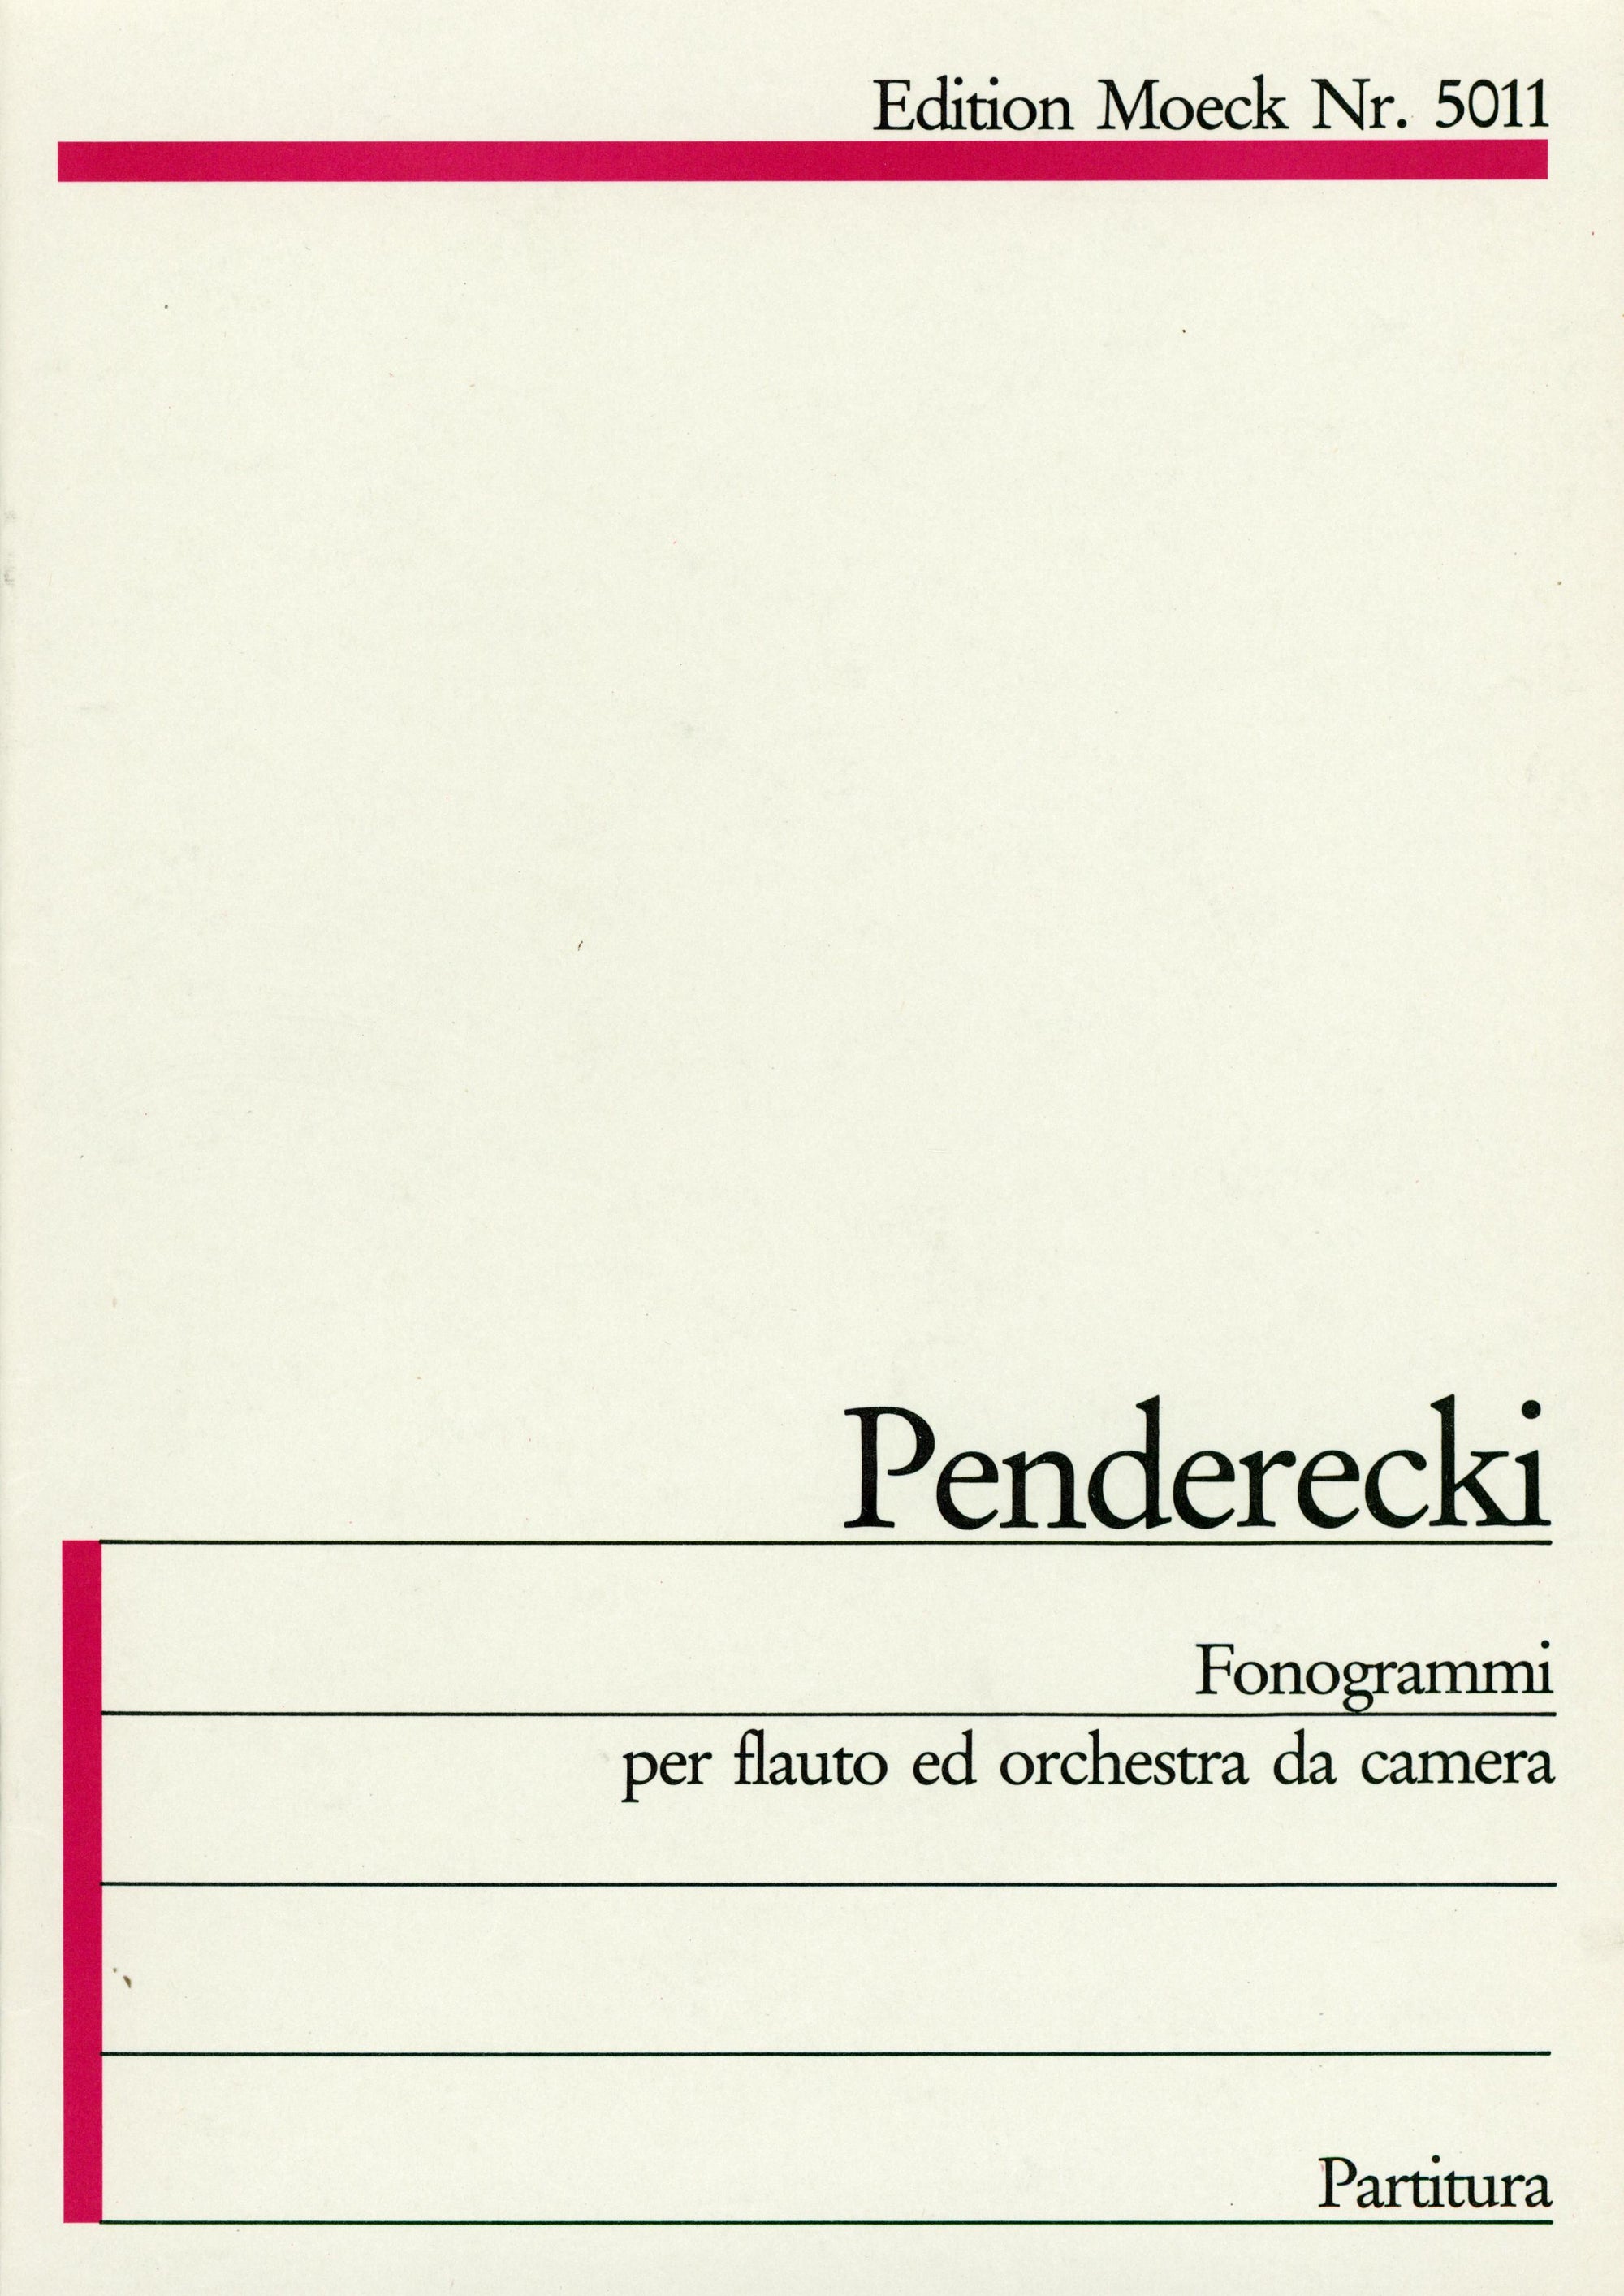 Penderecki: Fonogrammi